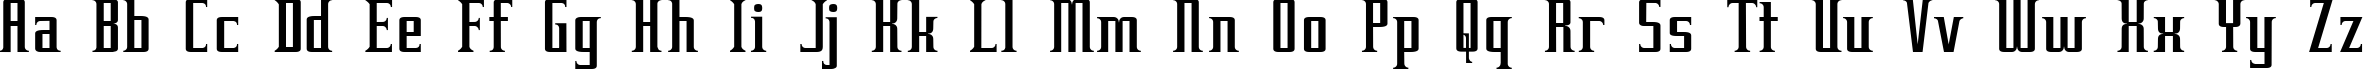 Пример написания английского алфавита шрифтом Equine